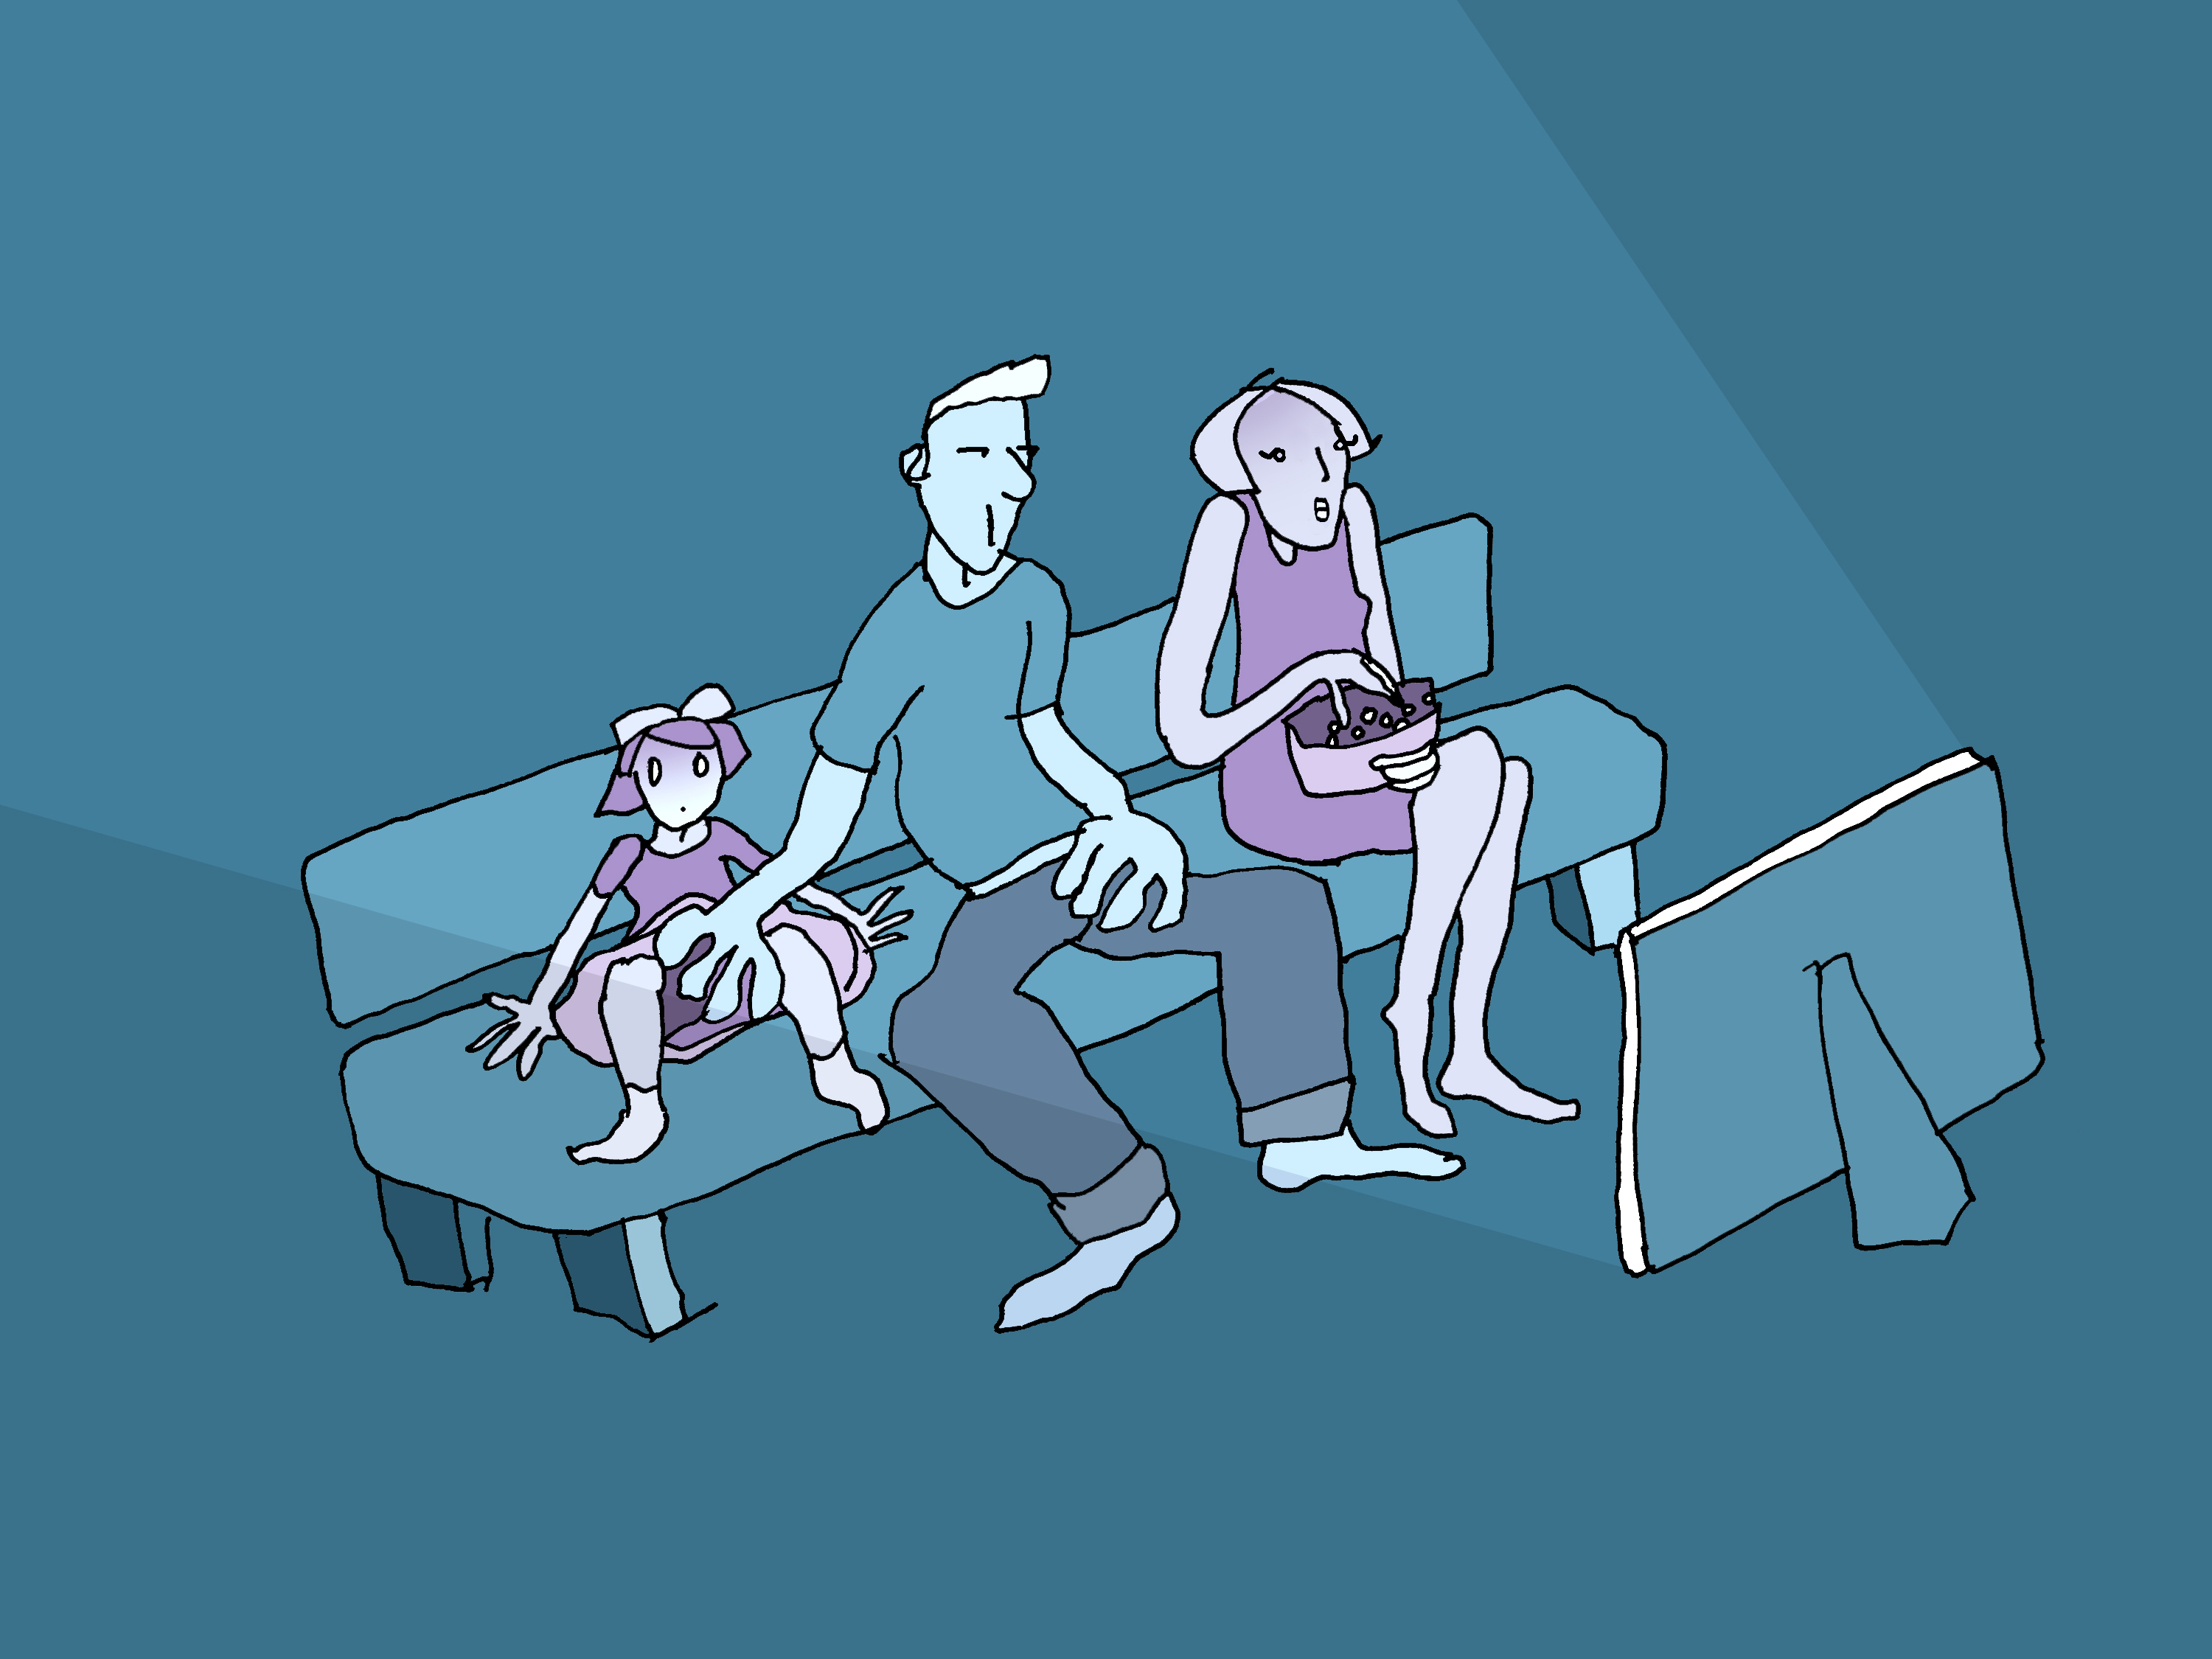 Eine Mutter, ein Vater und ihre kleine Tochter sitzen auf dem Sofa und schauen fern. Der Vater berührt mit einer Hand den Schoss der Tochter, mit der anderen seinen eigenen. Die Tochter hat einen erschrockenen Blick. Die Mutter isst Popkorn und schenkt den beiden keine Aufmerksamkeit.